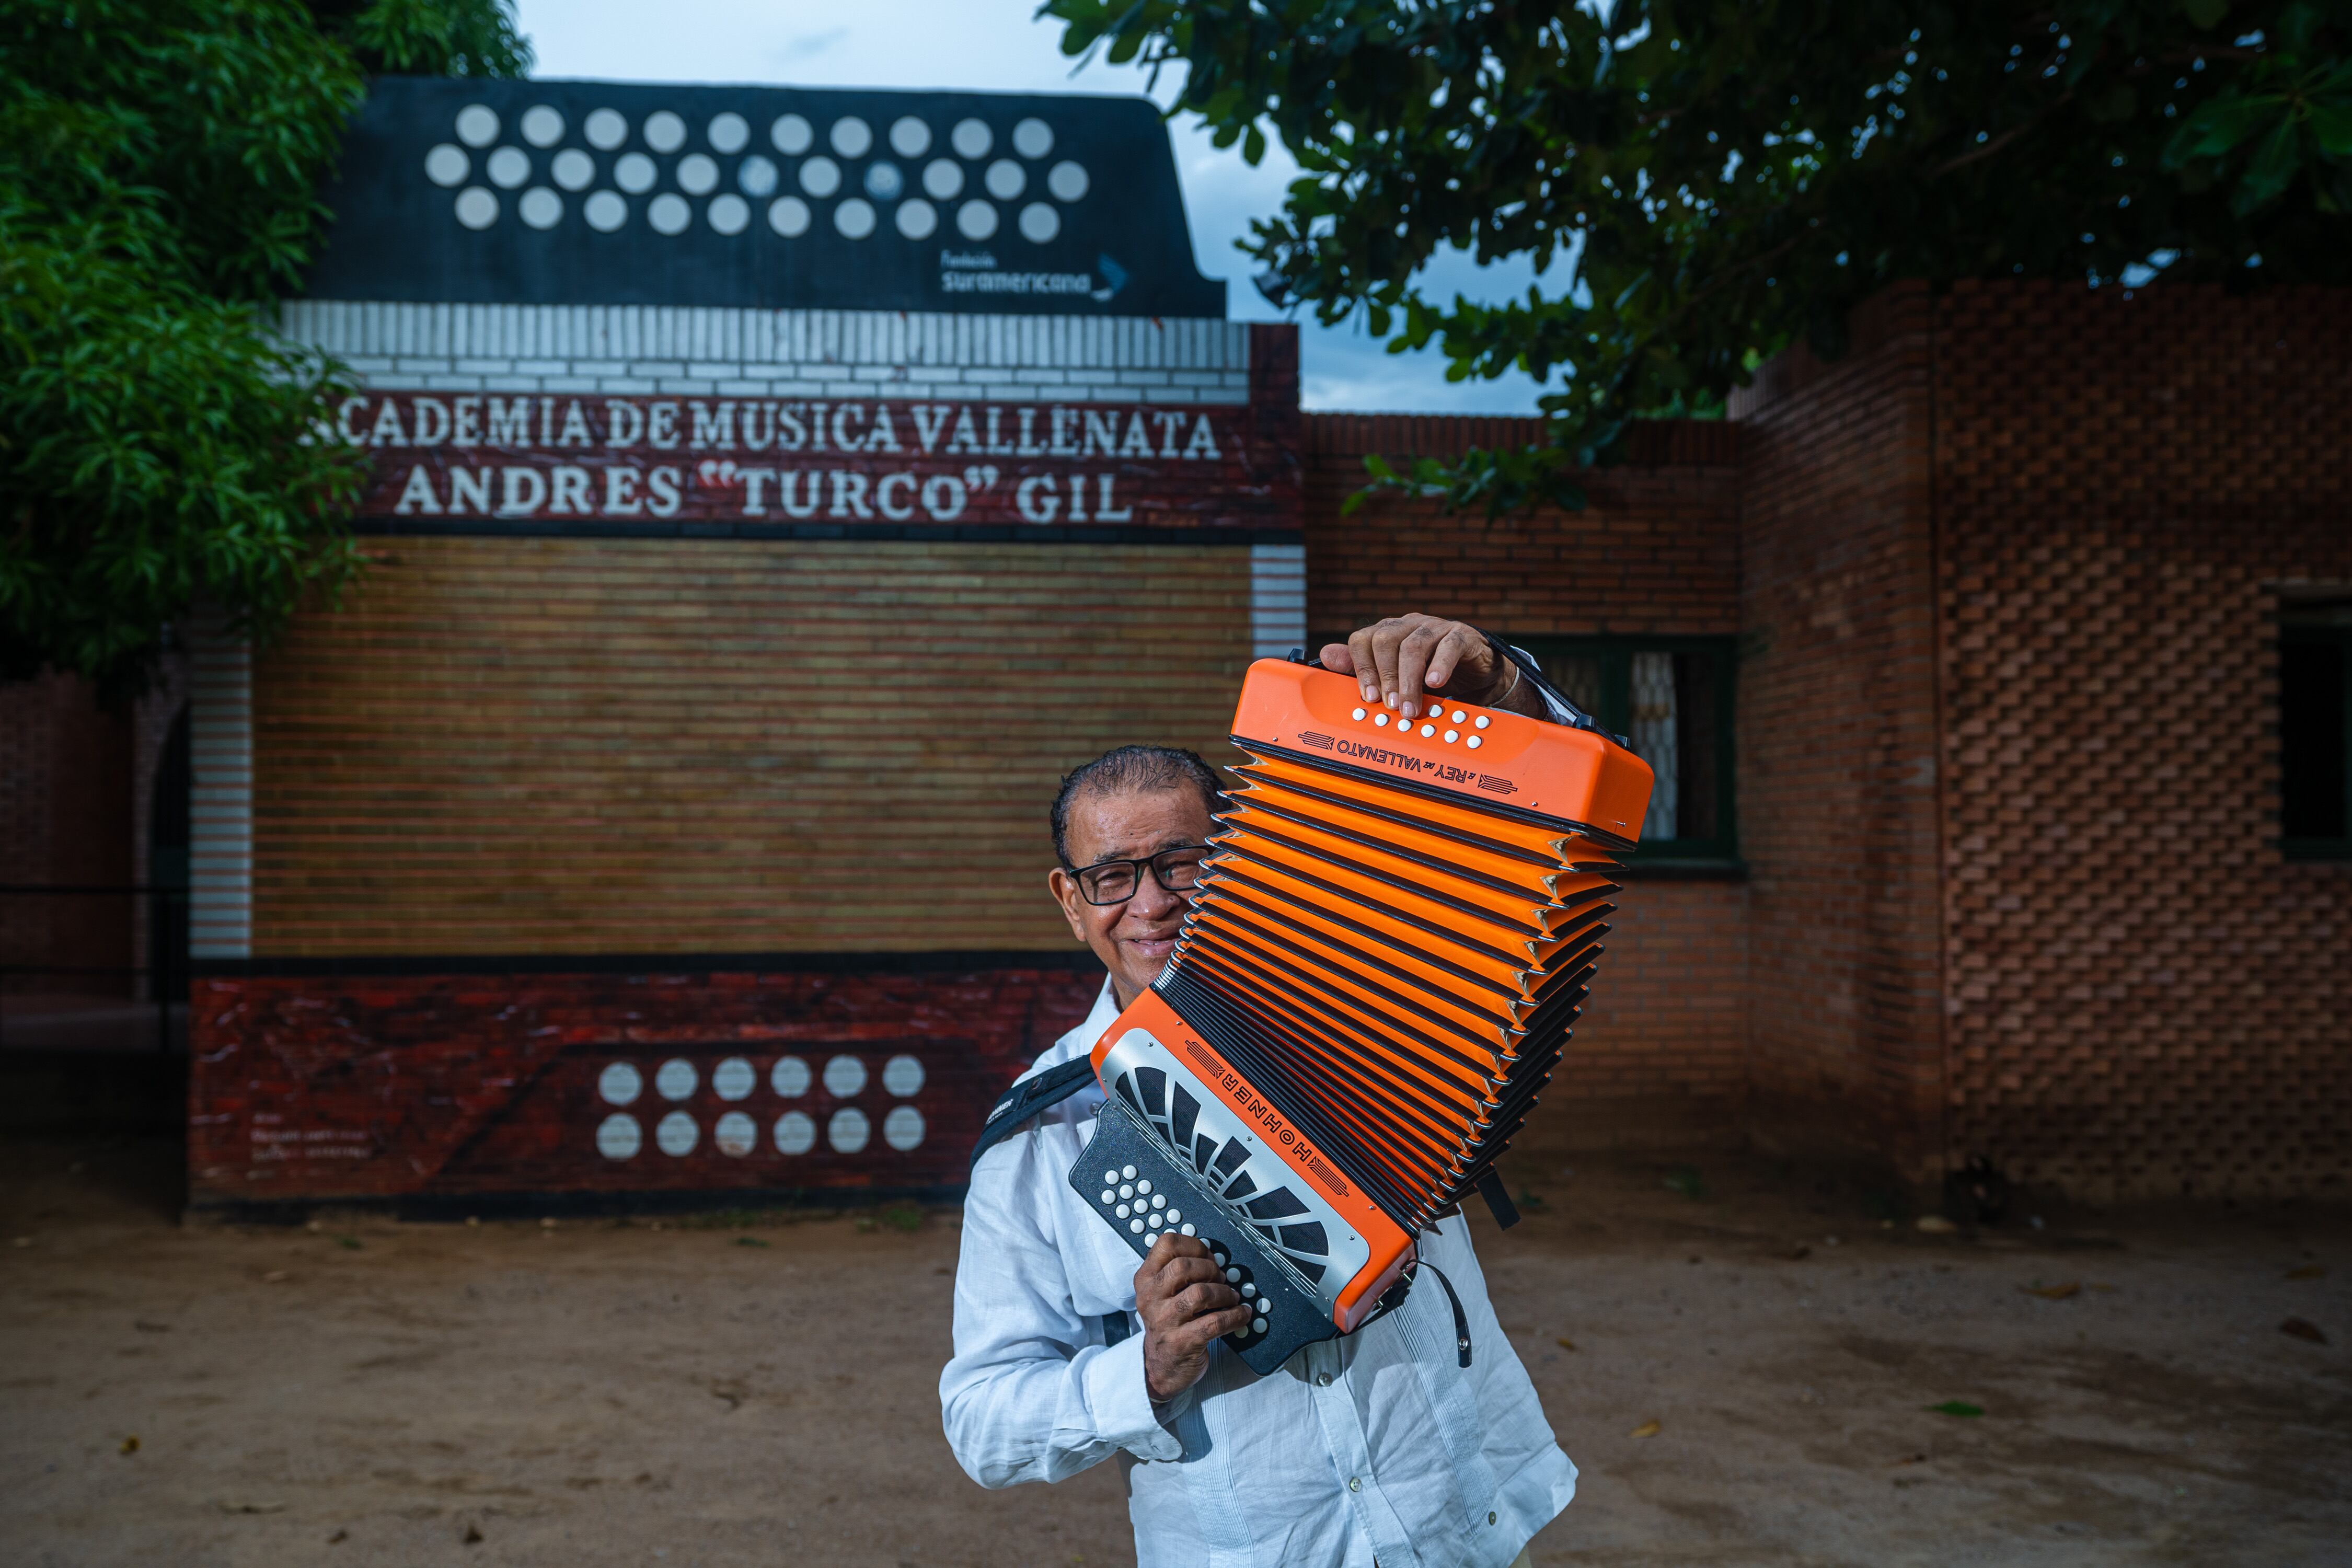 El “Turco” Gil posa para un retrato al frente de la academia, en la capital del vallenato.